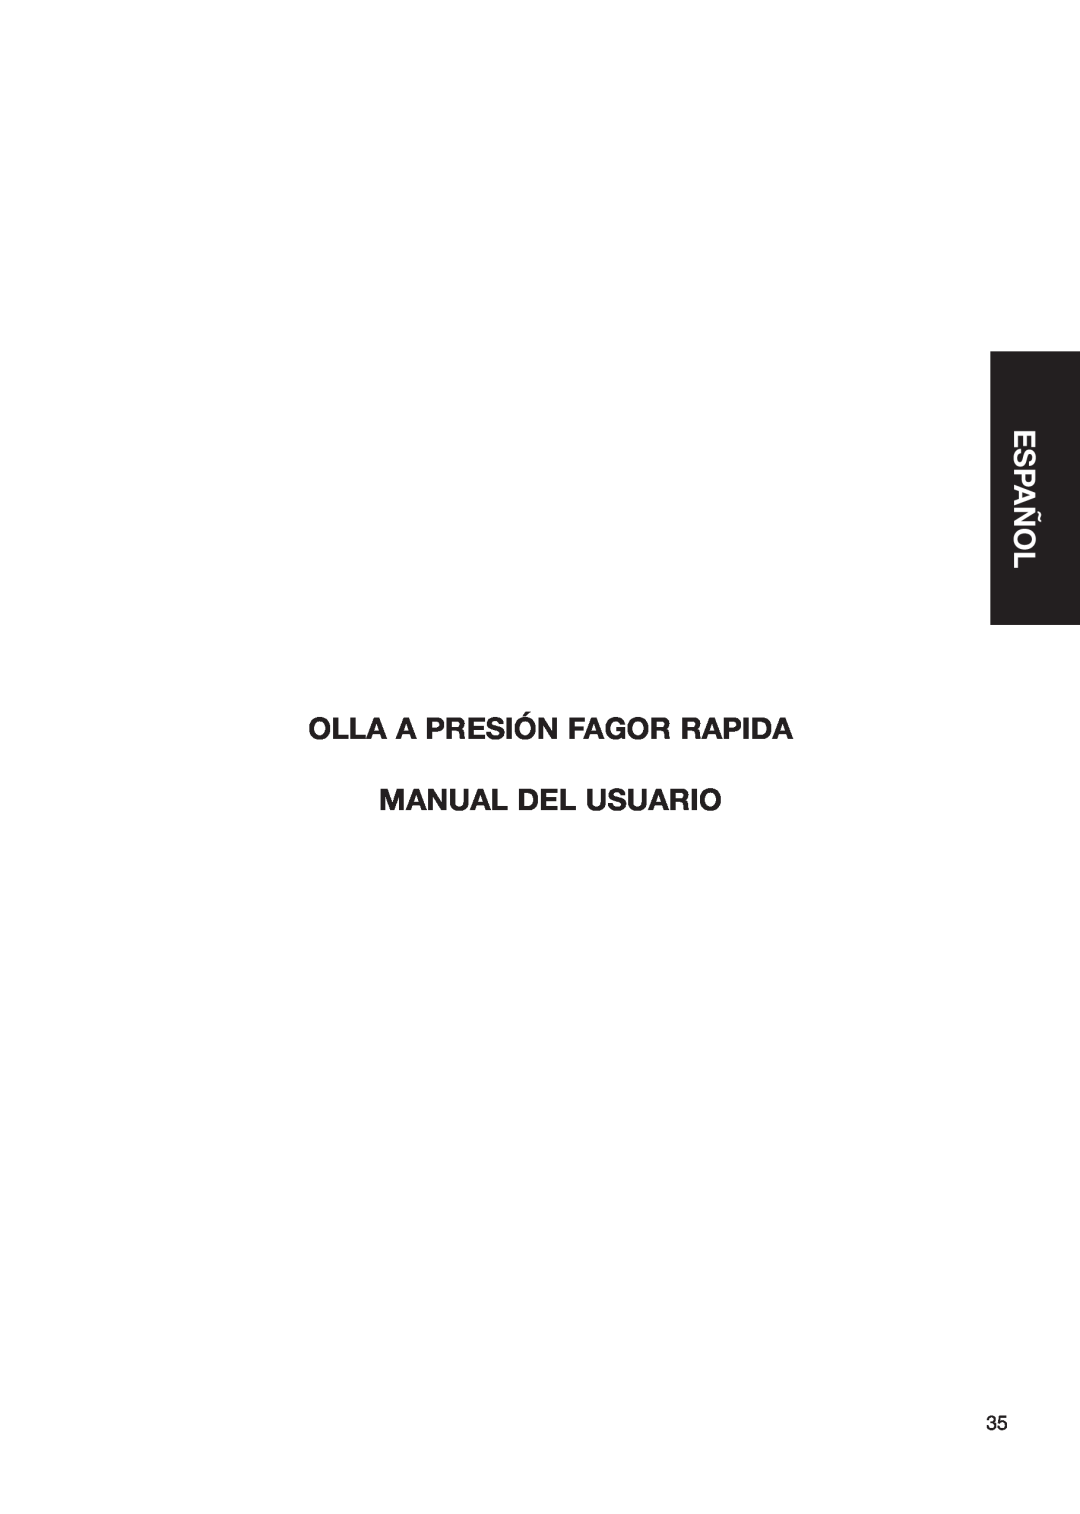 Fagor America Fagor Rapida Pressure Cooker user manual Español, Olla A Presión Fagor Rapida Manual Del Usuario 